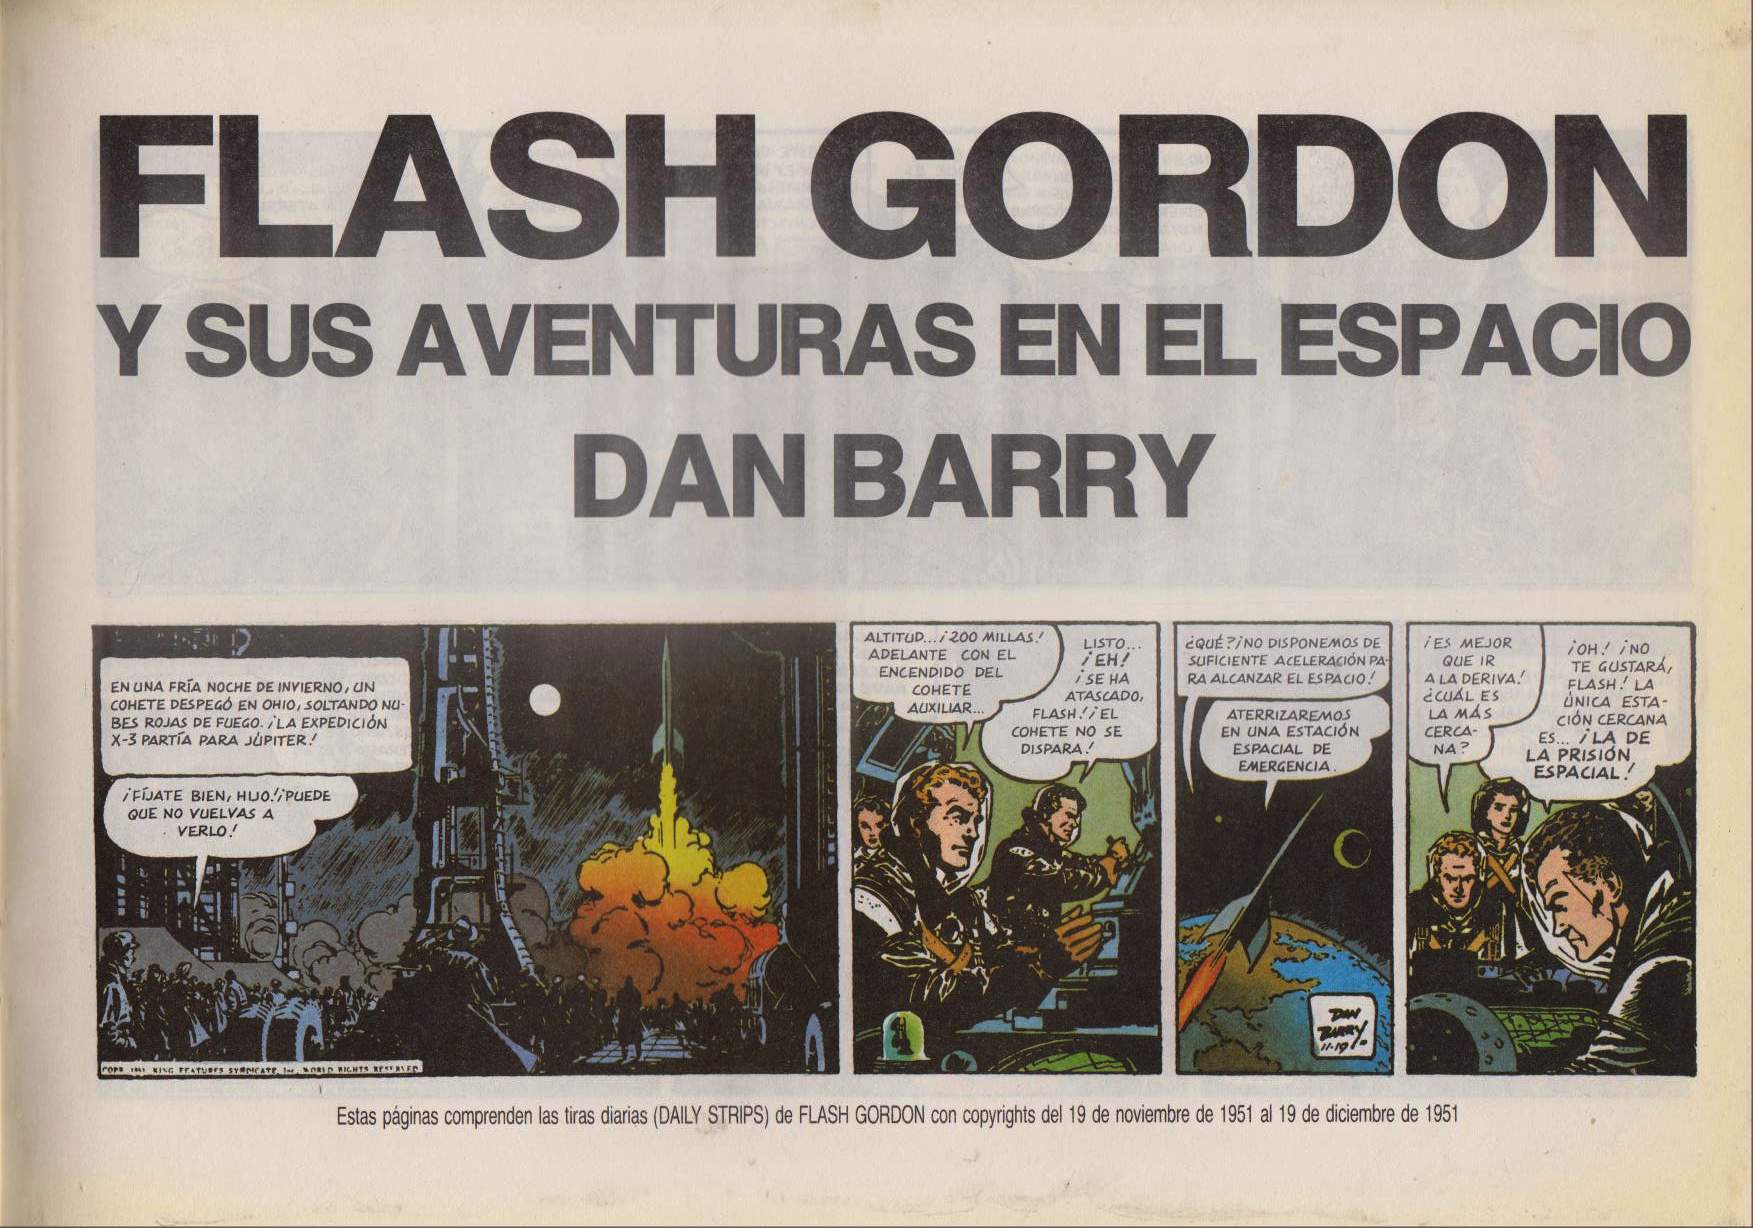 FLASH GORDON DE DAN BARRY